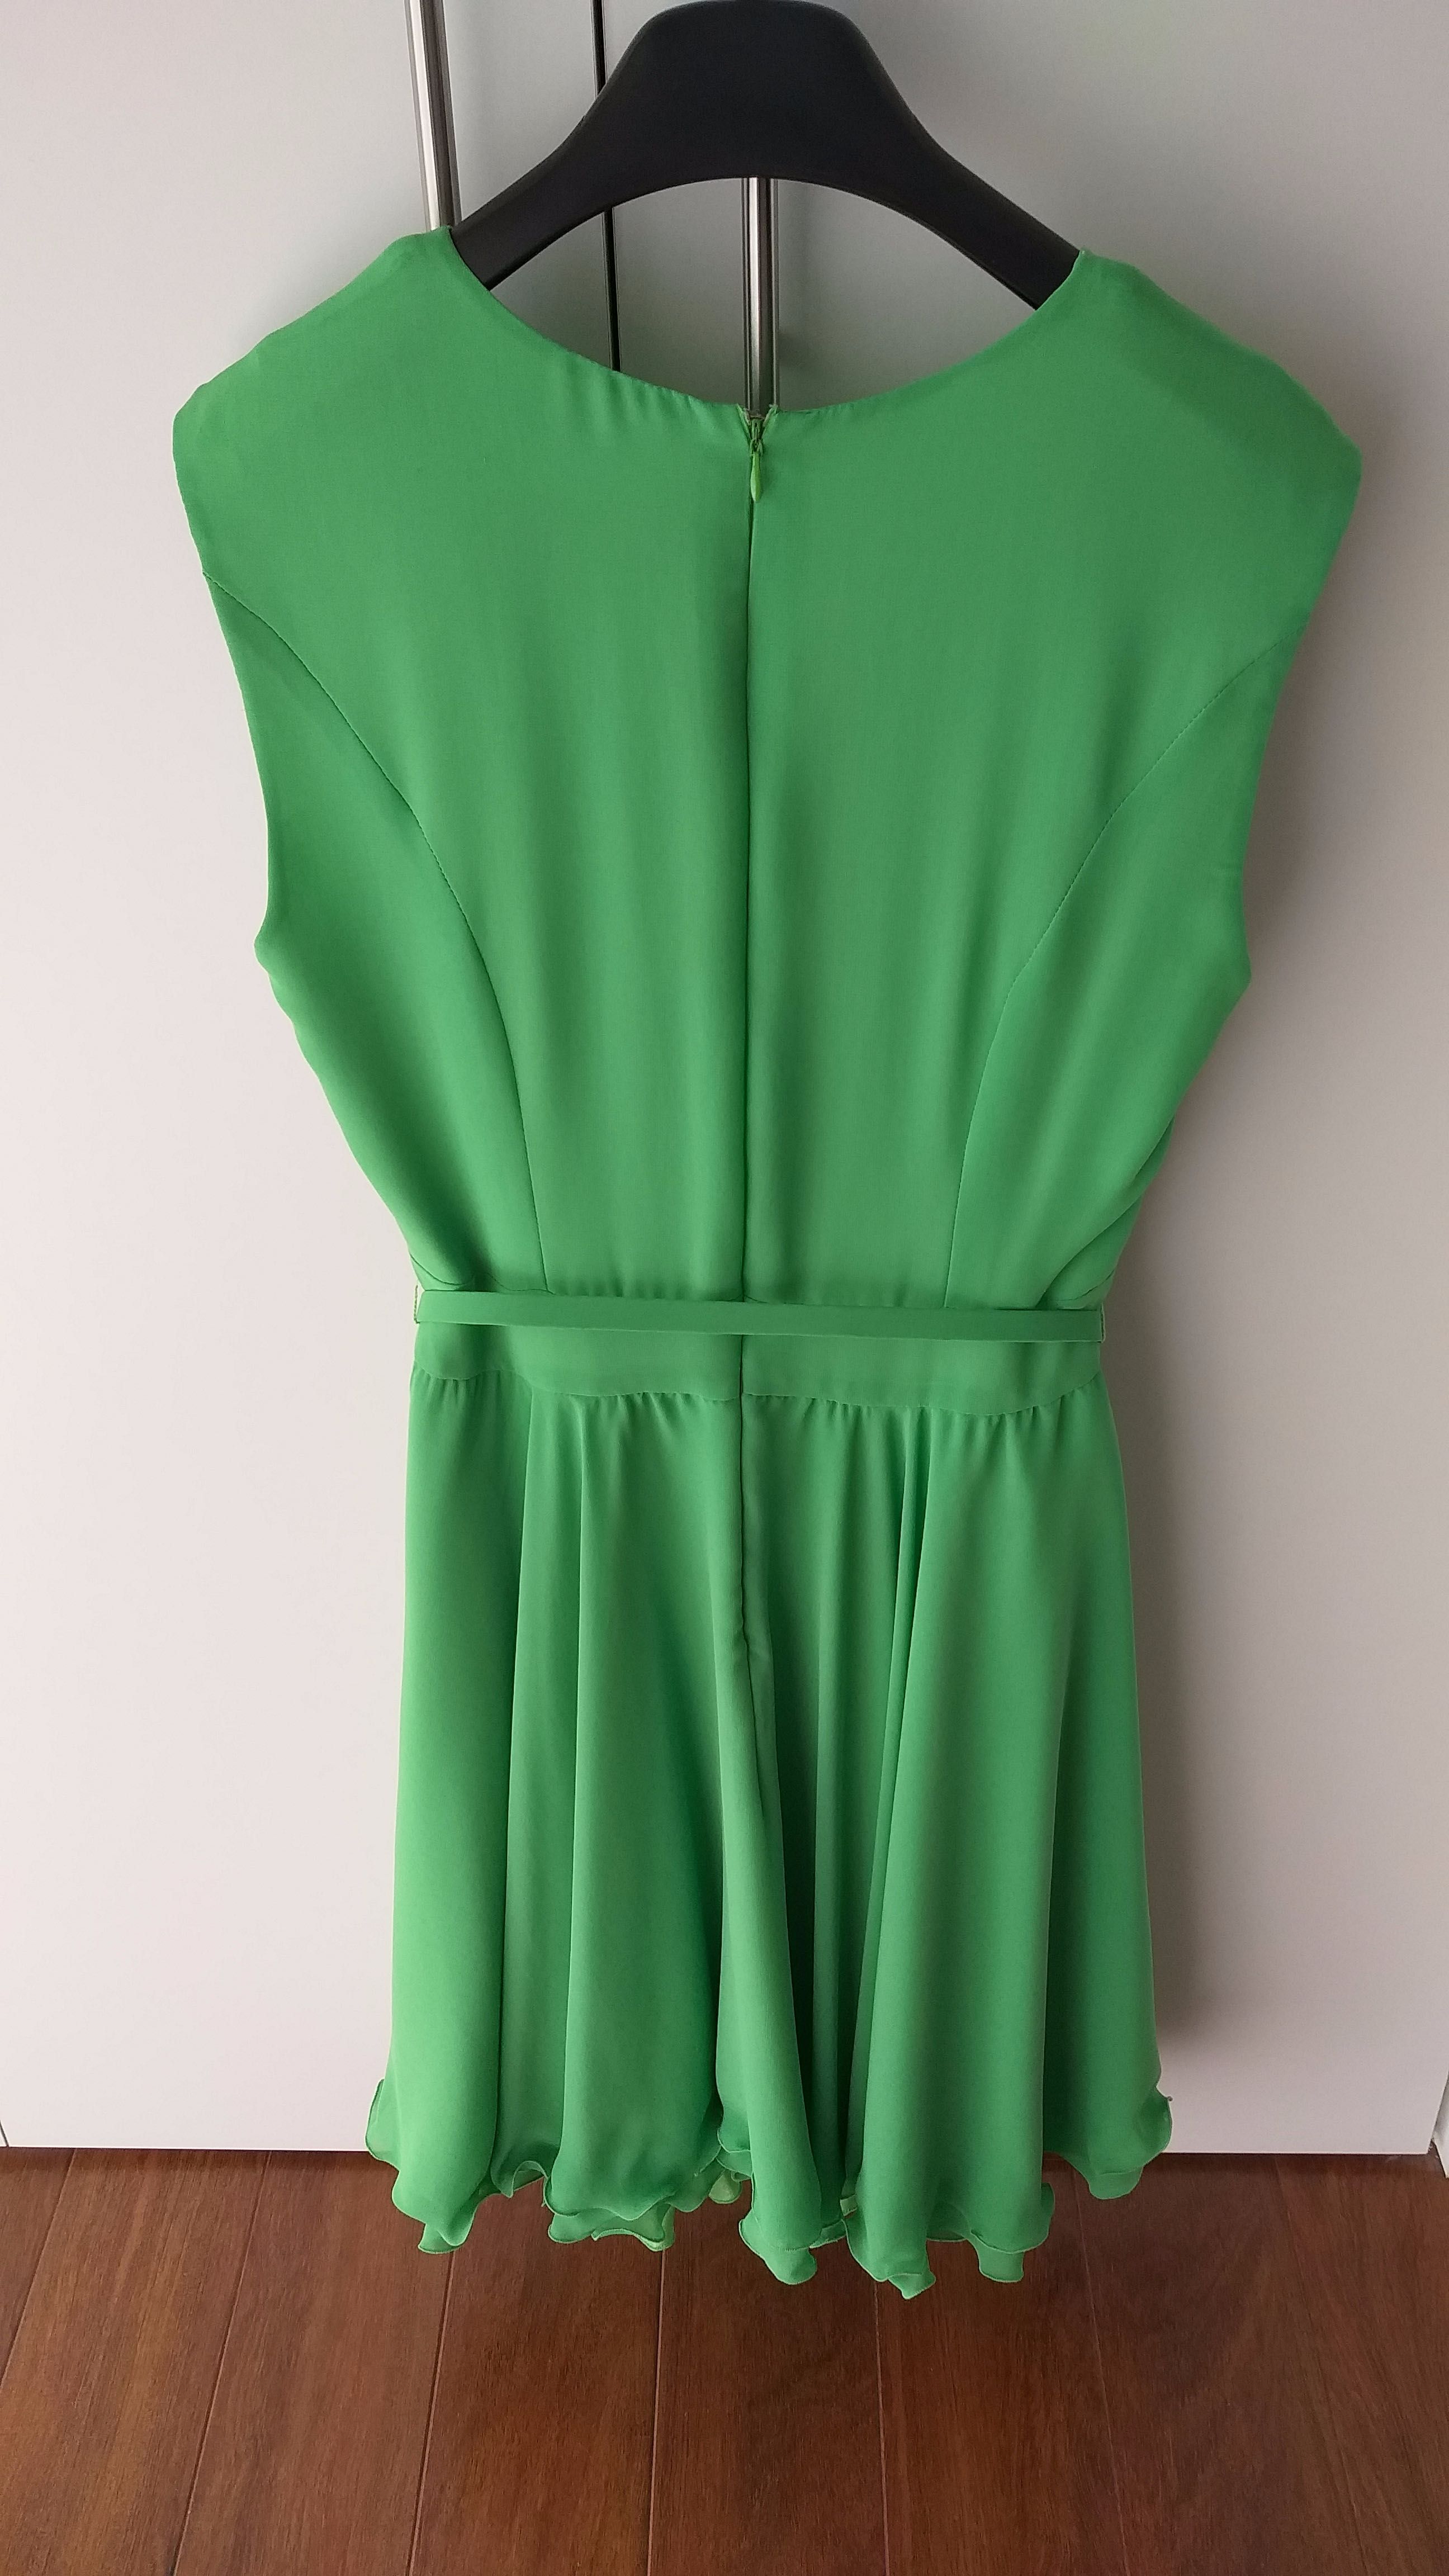 Vestido verde festivo, muito elegante, muito pouco uso